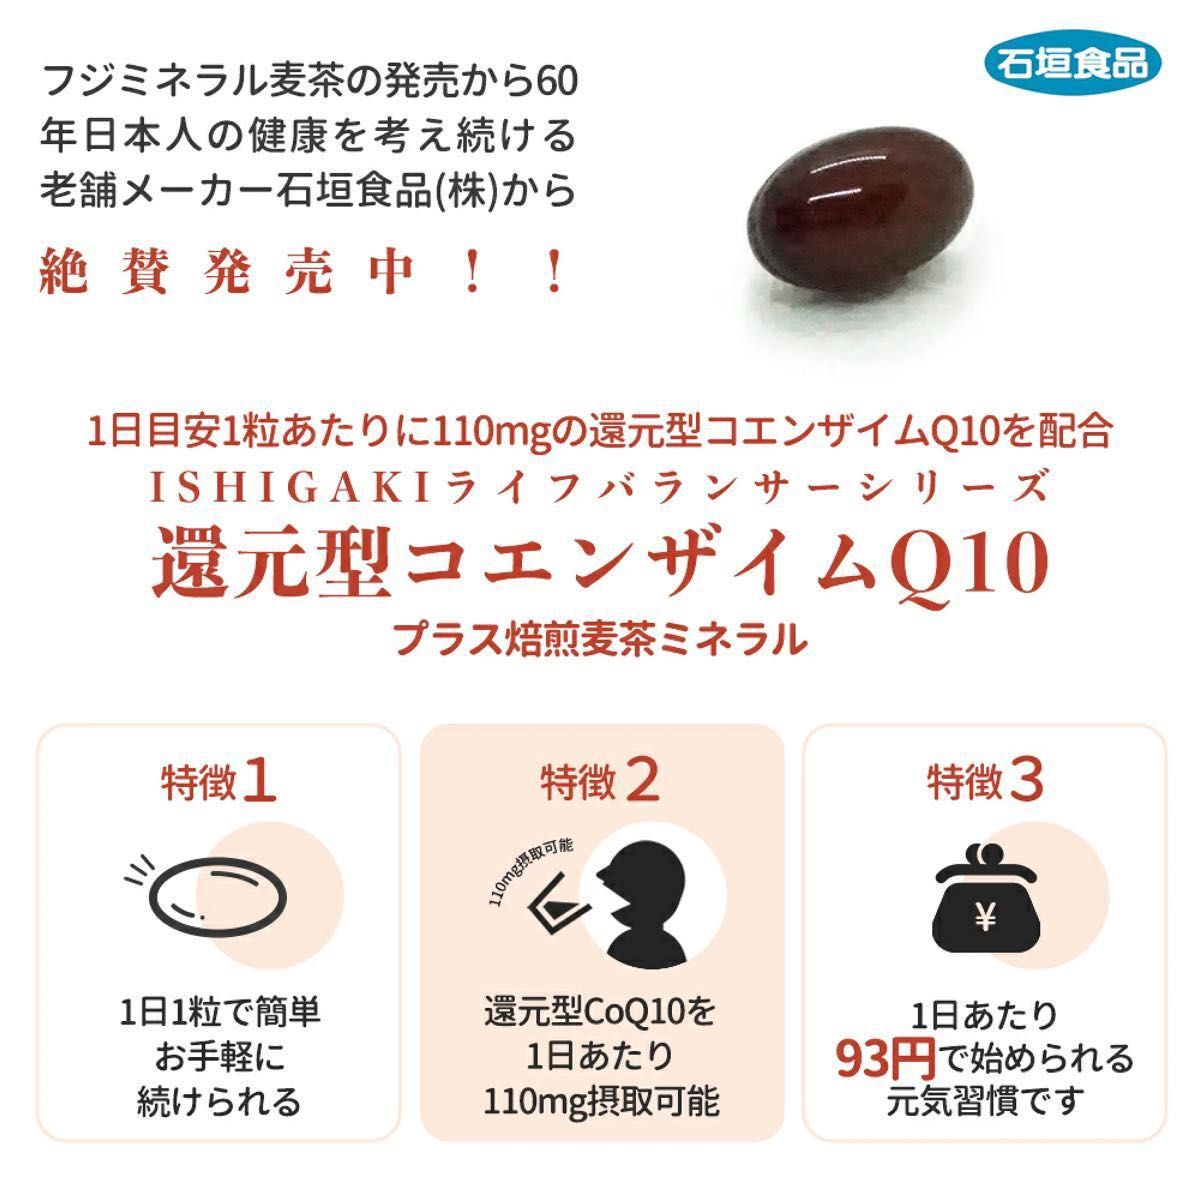 石垣食品 ライフバランサー 還元型コエンザイムQ10 ISHIGAKI LIFE BALANCER 30粒 カネカ 睡眠サポート